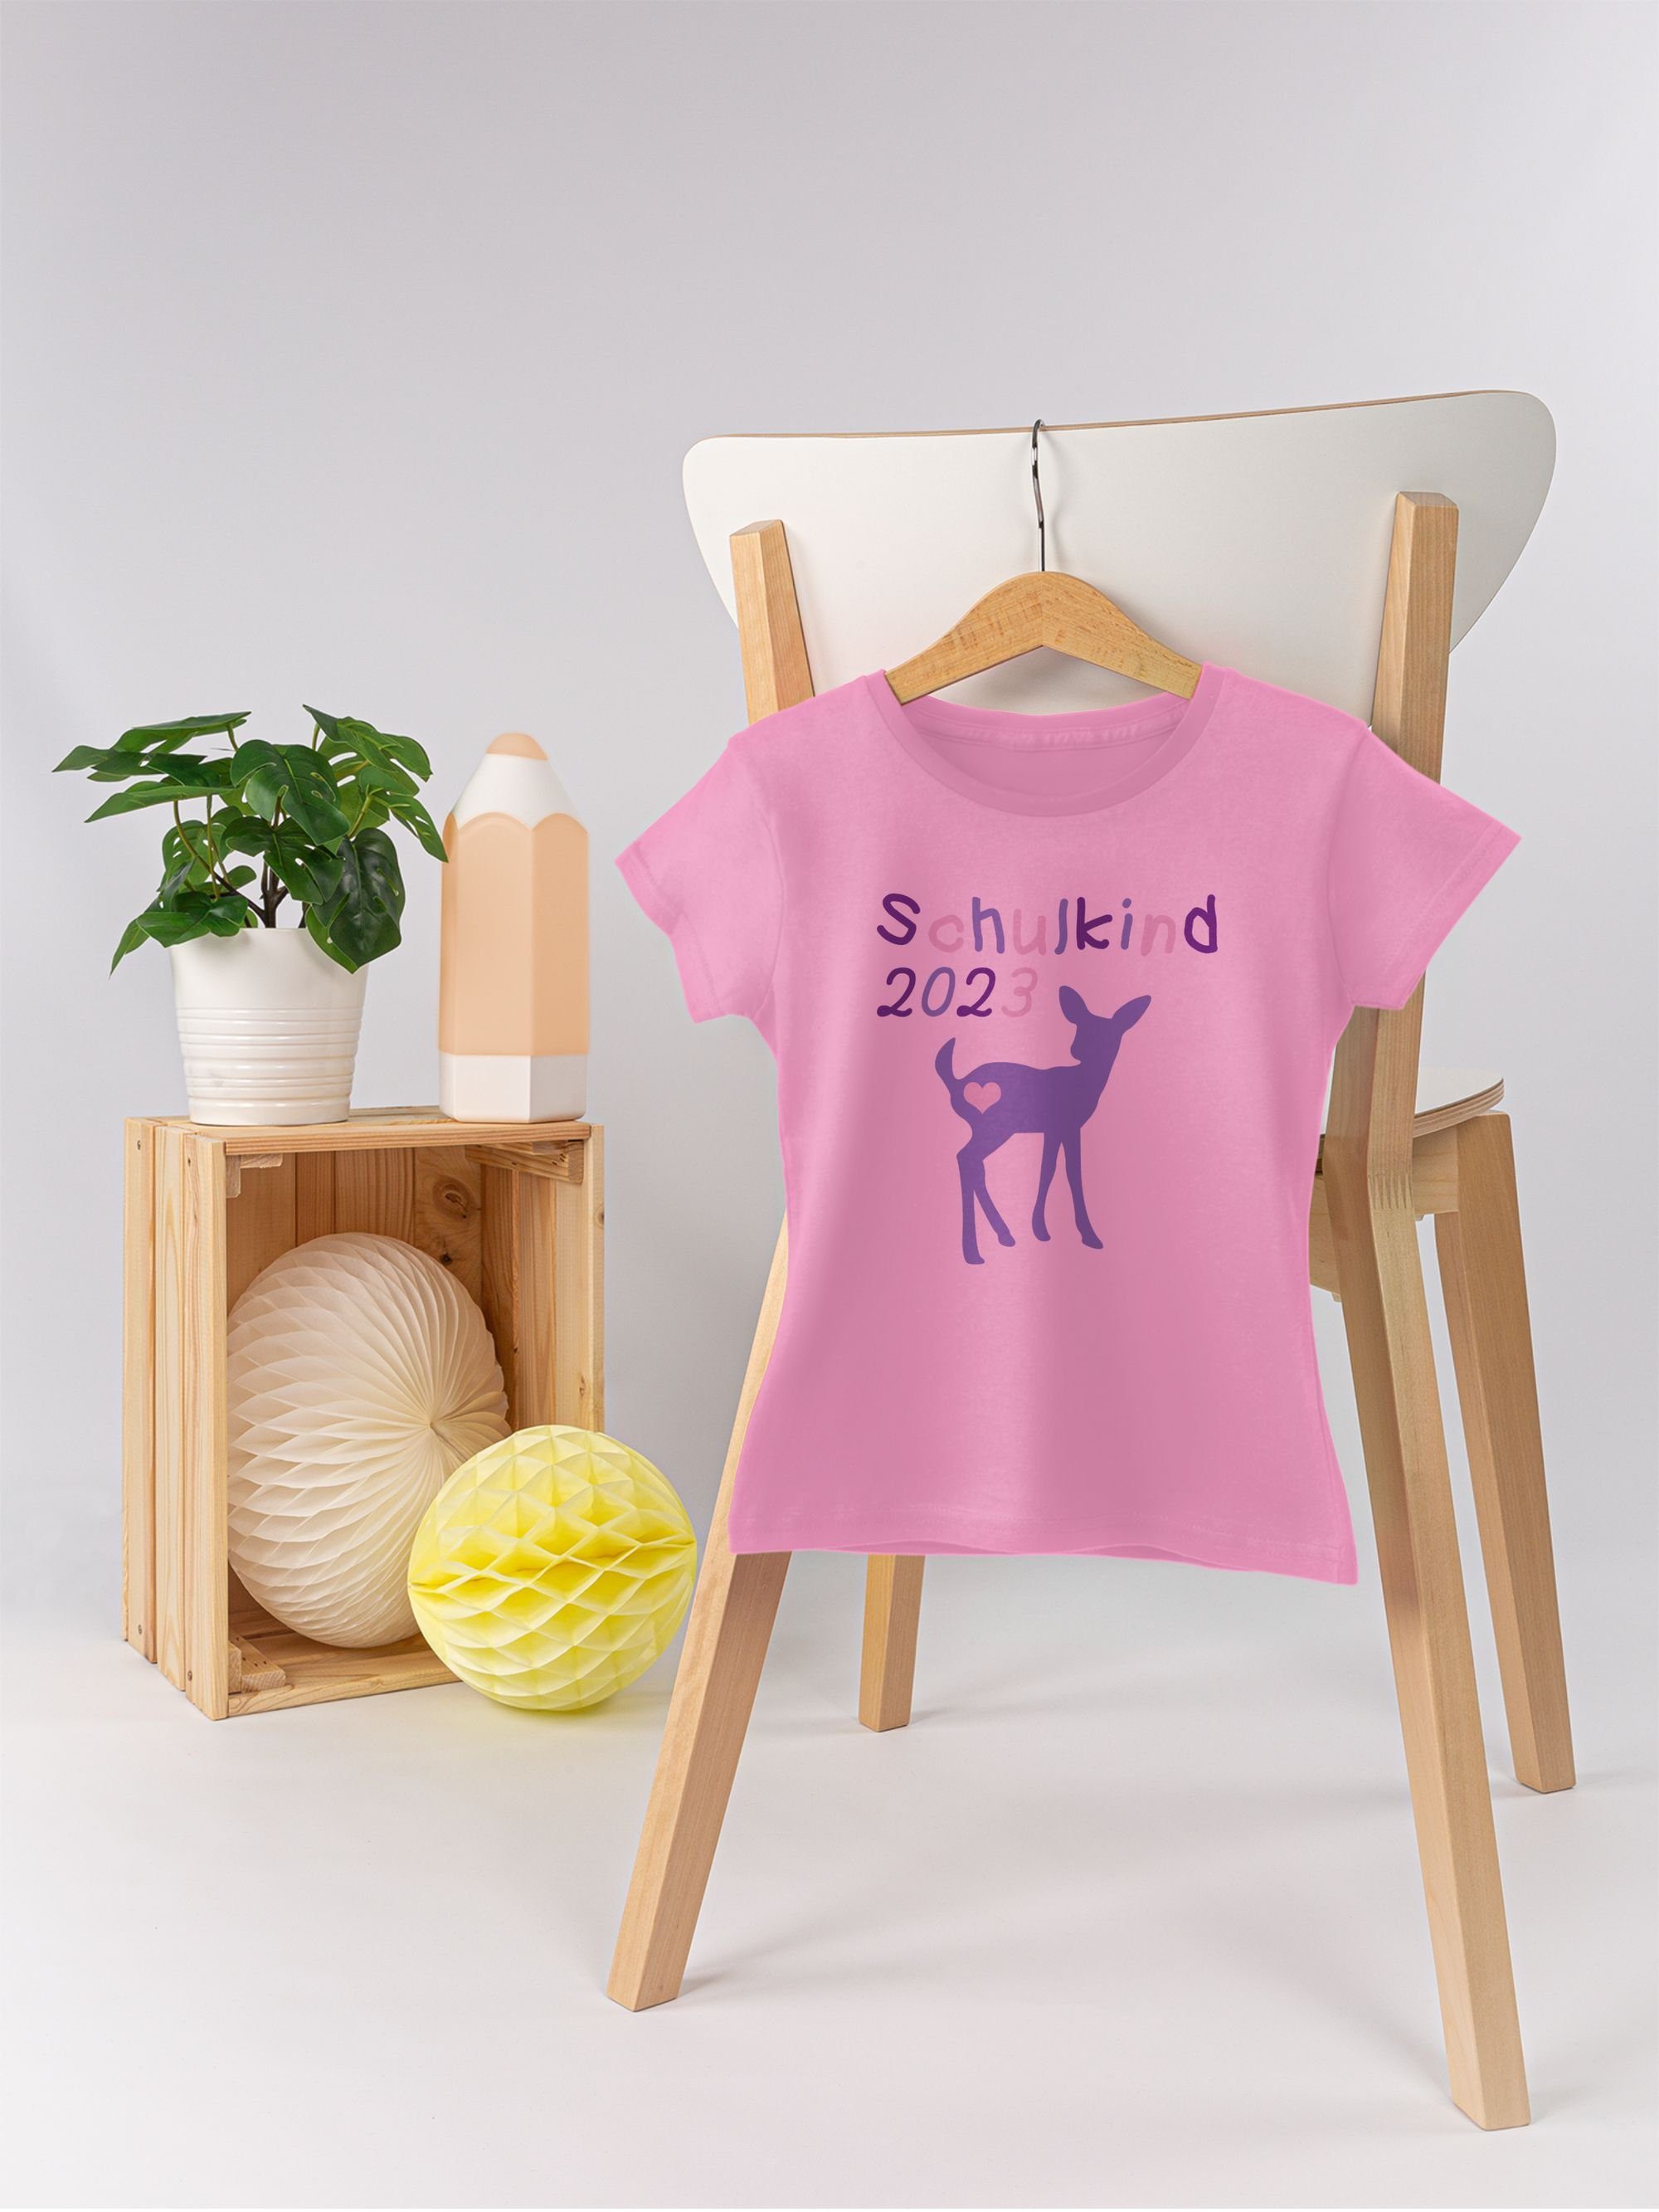 Shirtracer Rosa Lila Schulkind 1 T-Shirt Reh Kitz Mädchen Einschulung 2023